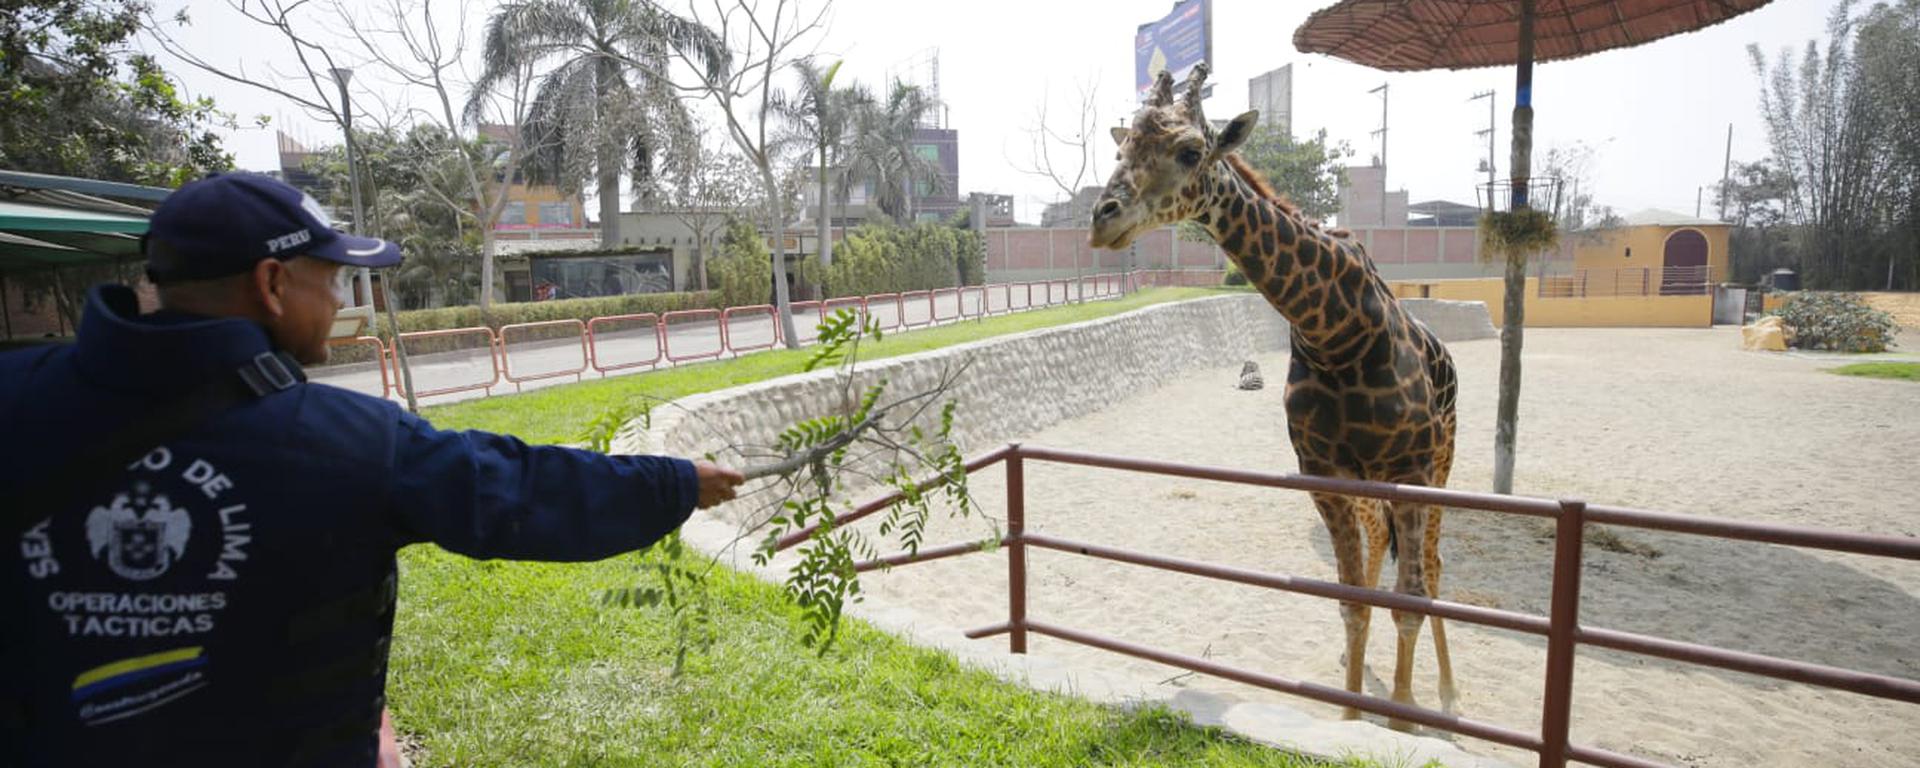 La nueva sede del Parque de las Leyendas en Huachipa abre sus puertas al público: 1.100 animales podrán ser vistos